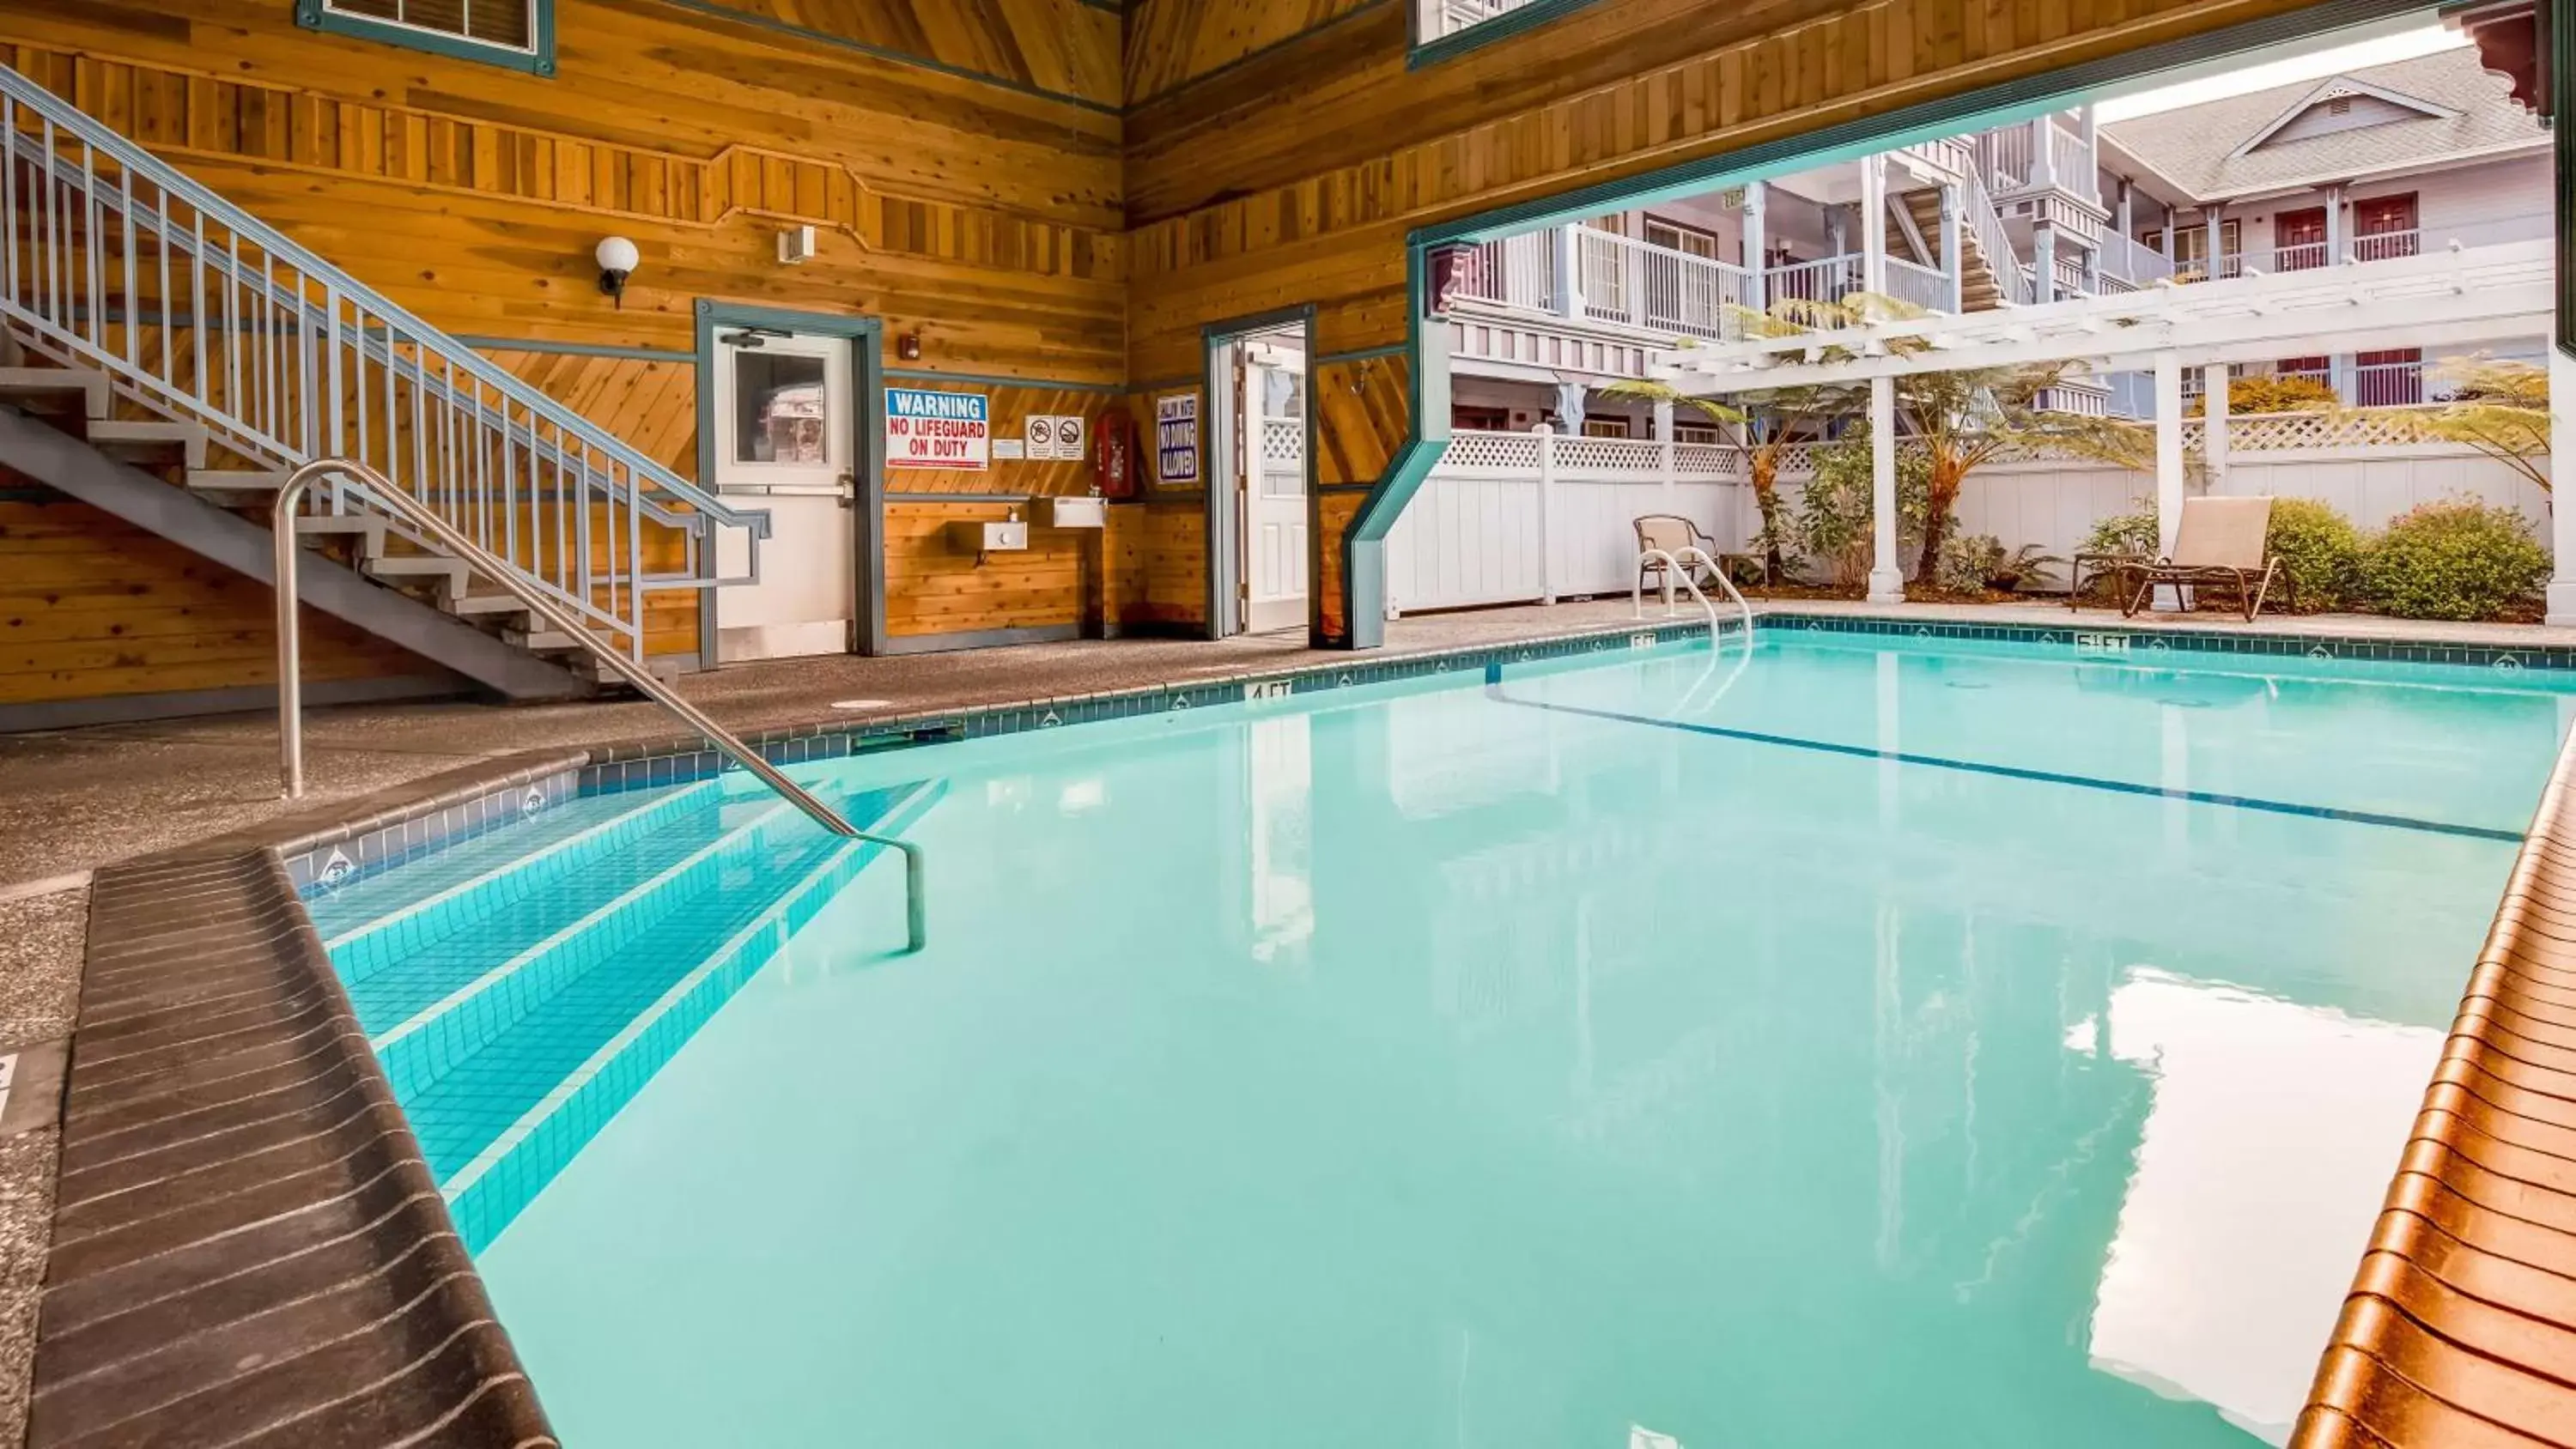 On site, Swimming Pool in Best Western Plus Bayshore Inn